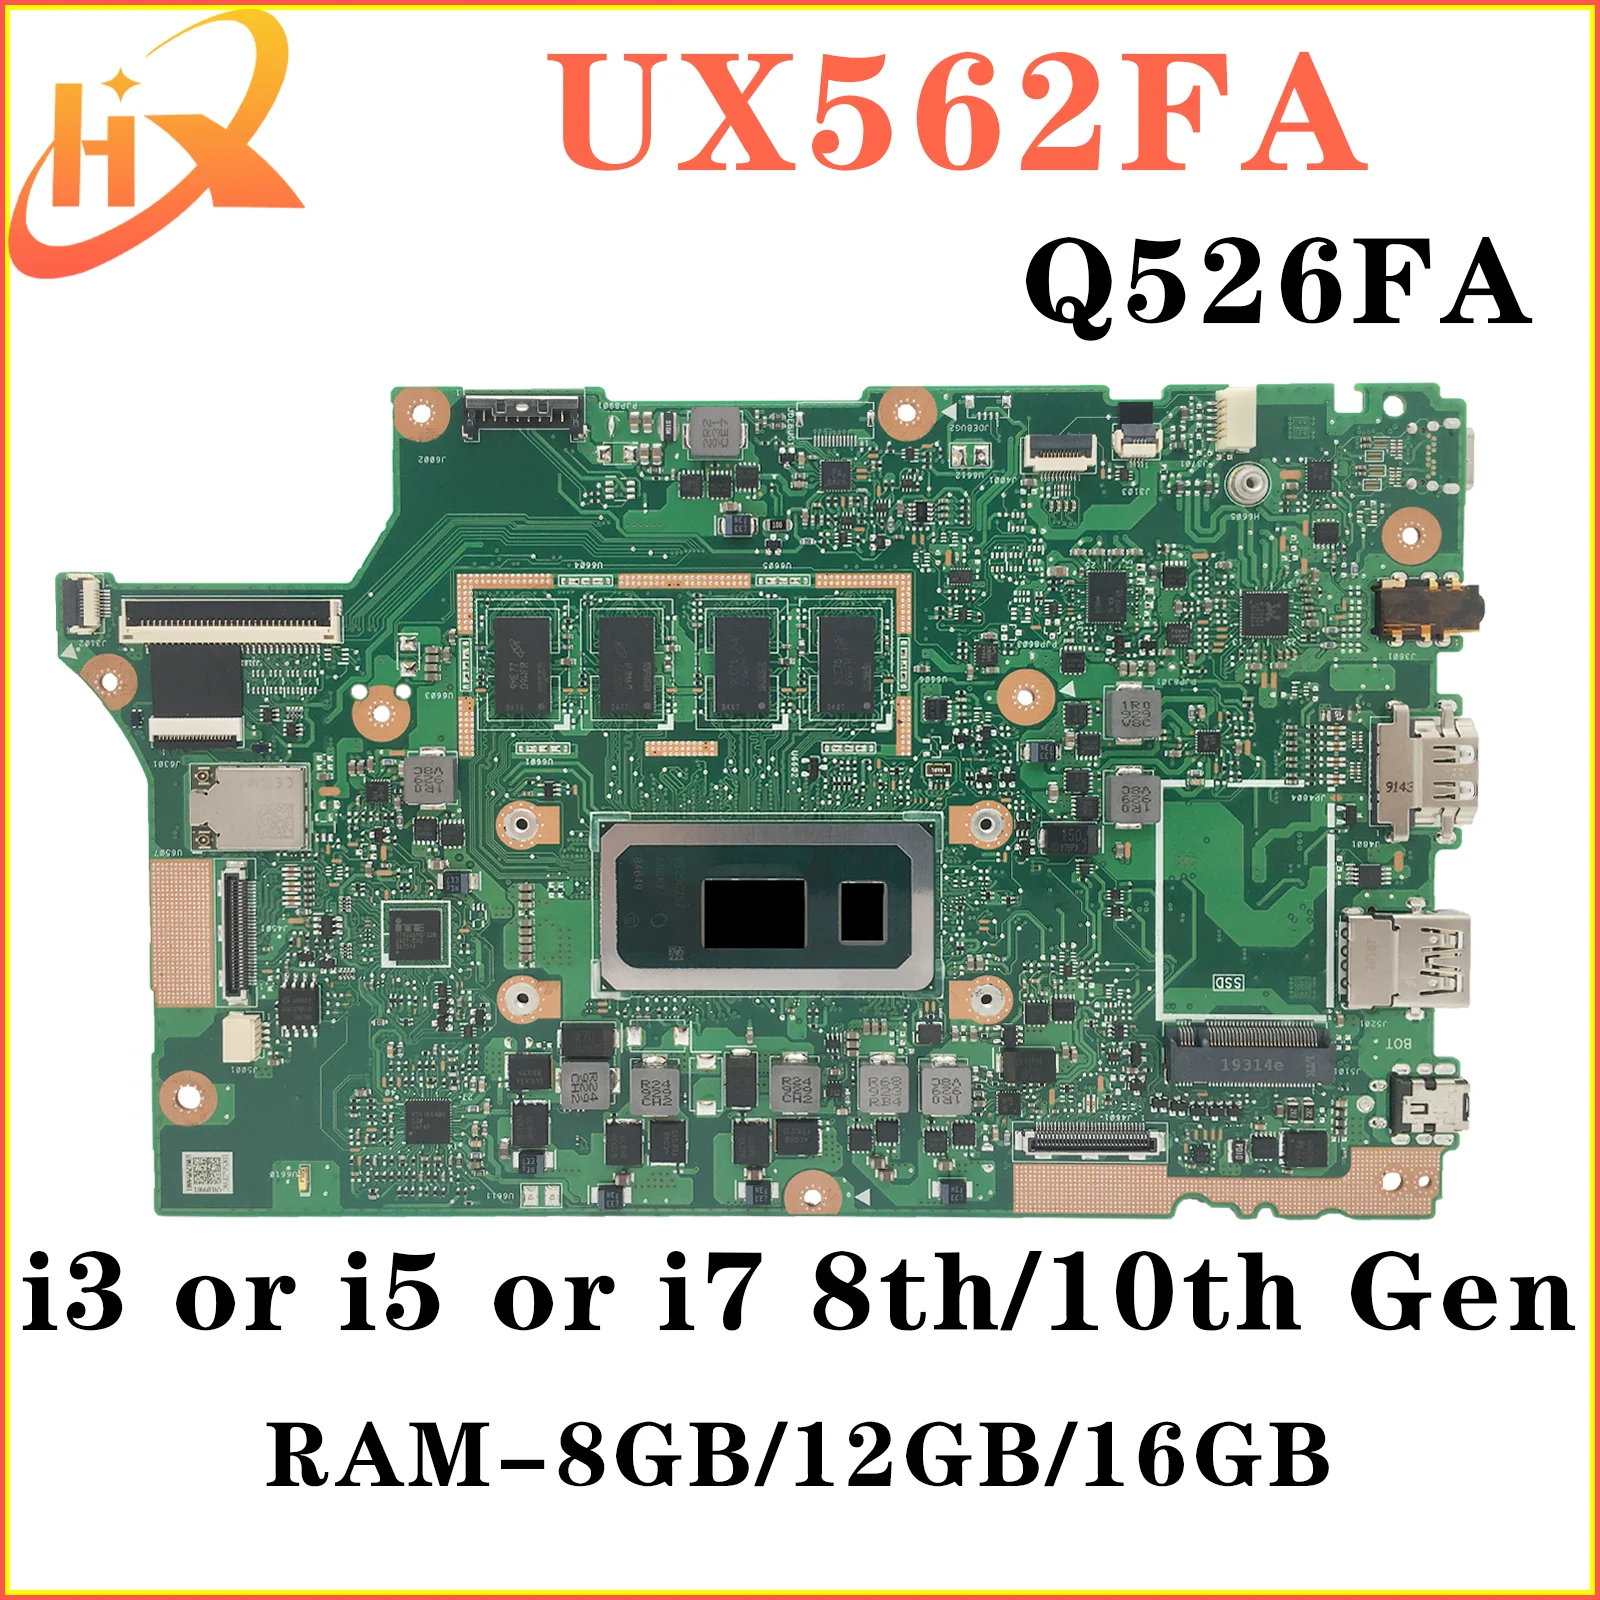 UX562FAC Материнская плата ASUS UX562FA UX562F Q526FA Q526FAC Q526F материнская плата для ноутбука i5 i7 8/10-го поколения RAM-8GB/12GB/16GB материнская плата ux435eg для ноутбука asus zenbook 14 ux435 ux435ea ux435eal ux435egl материнская плата w i5 1135g7 16gb 8gb ram